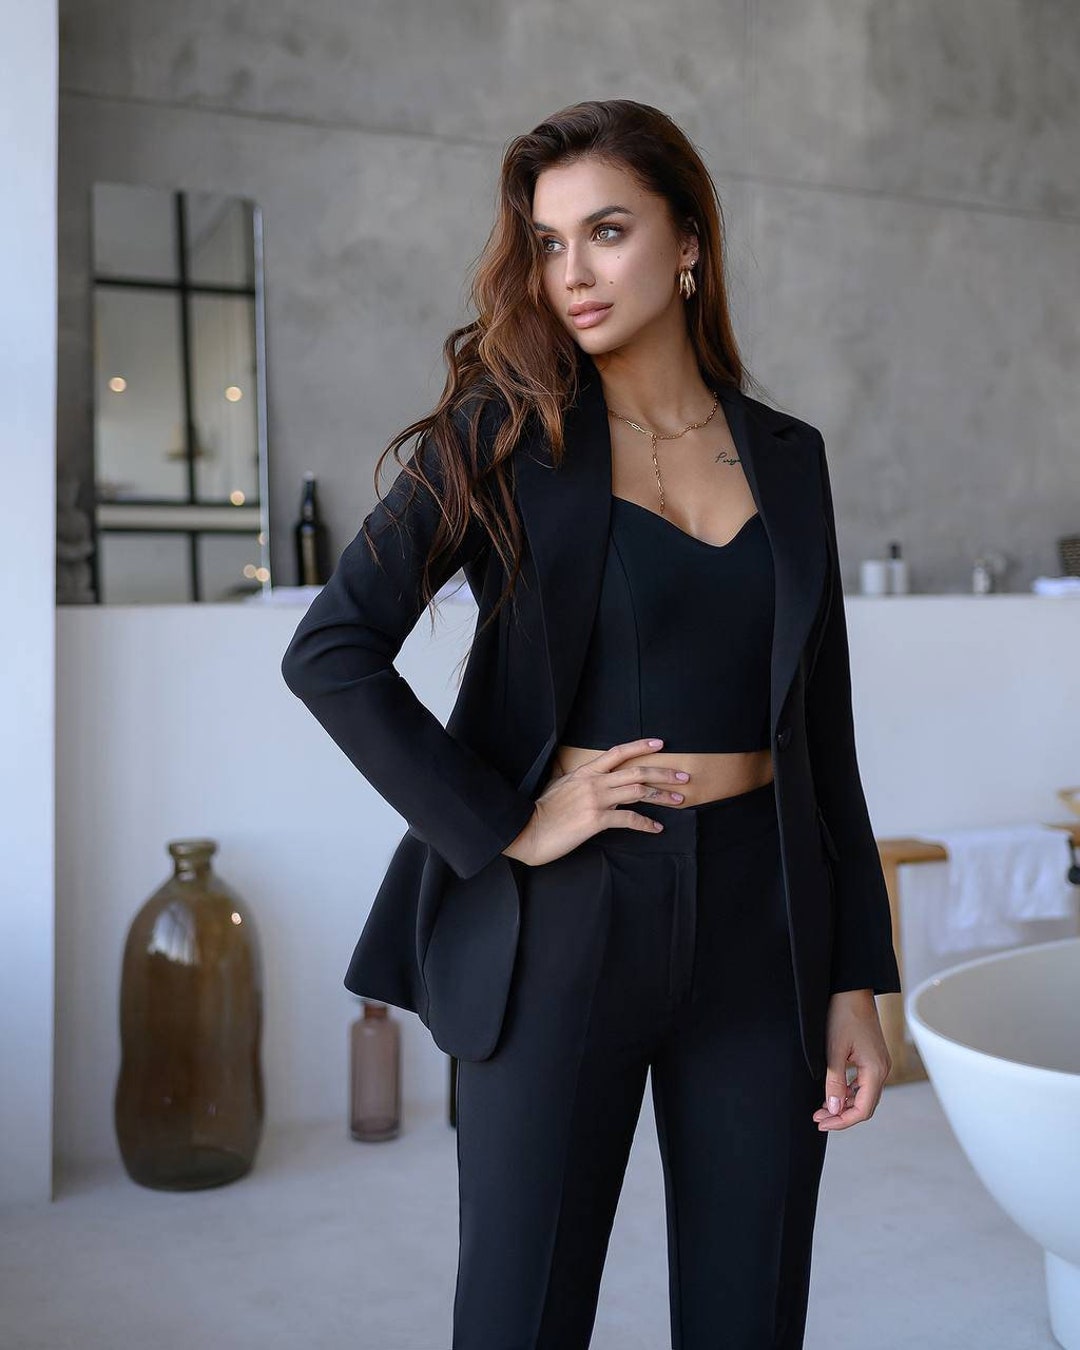 Buy Black Pant Suit Women, Black Business Suit for Ladies, Classic